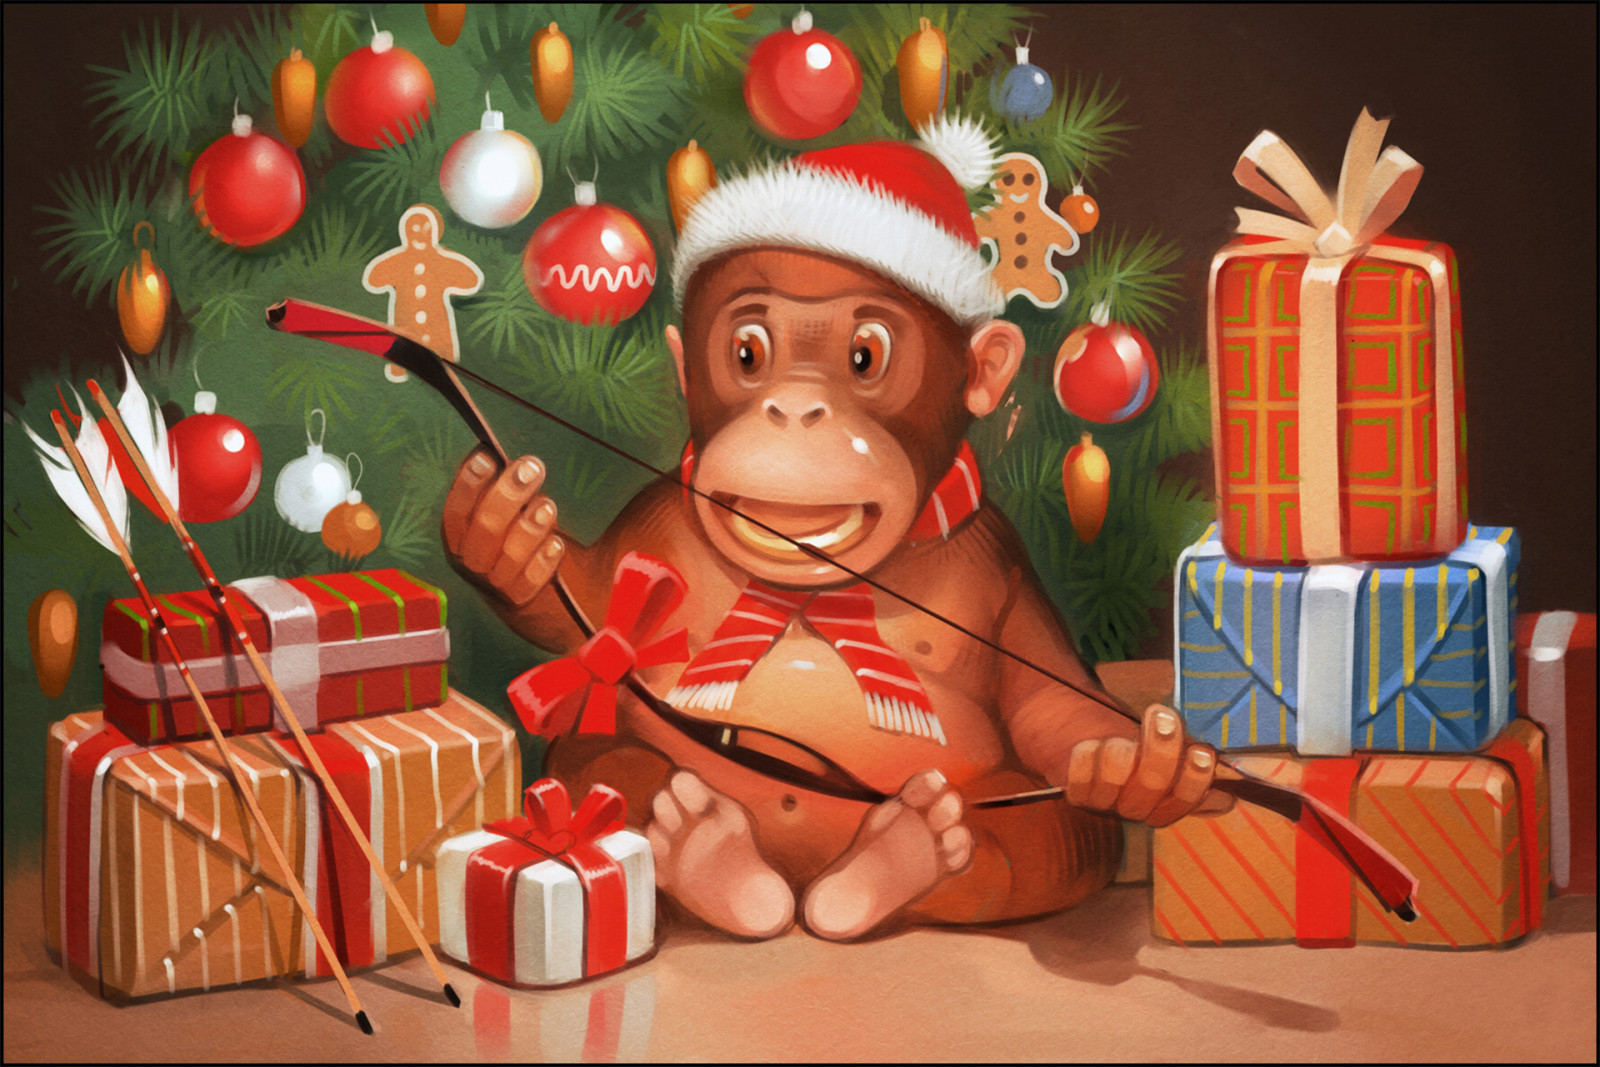 pohon, Tahun baru, hari Natal, suasana hati, liburan, hadiah, monyet, busur